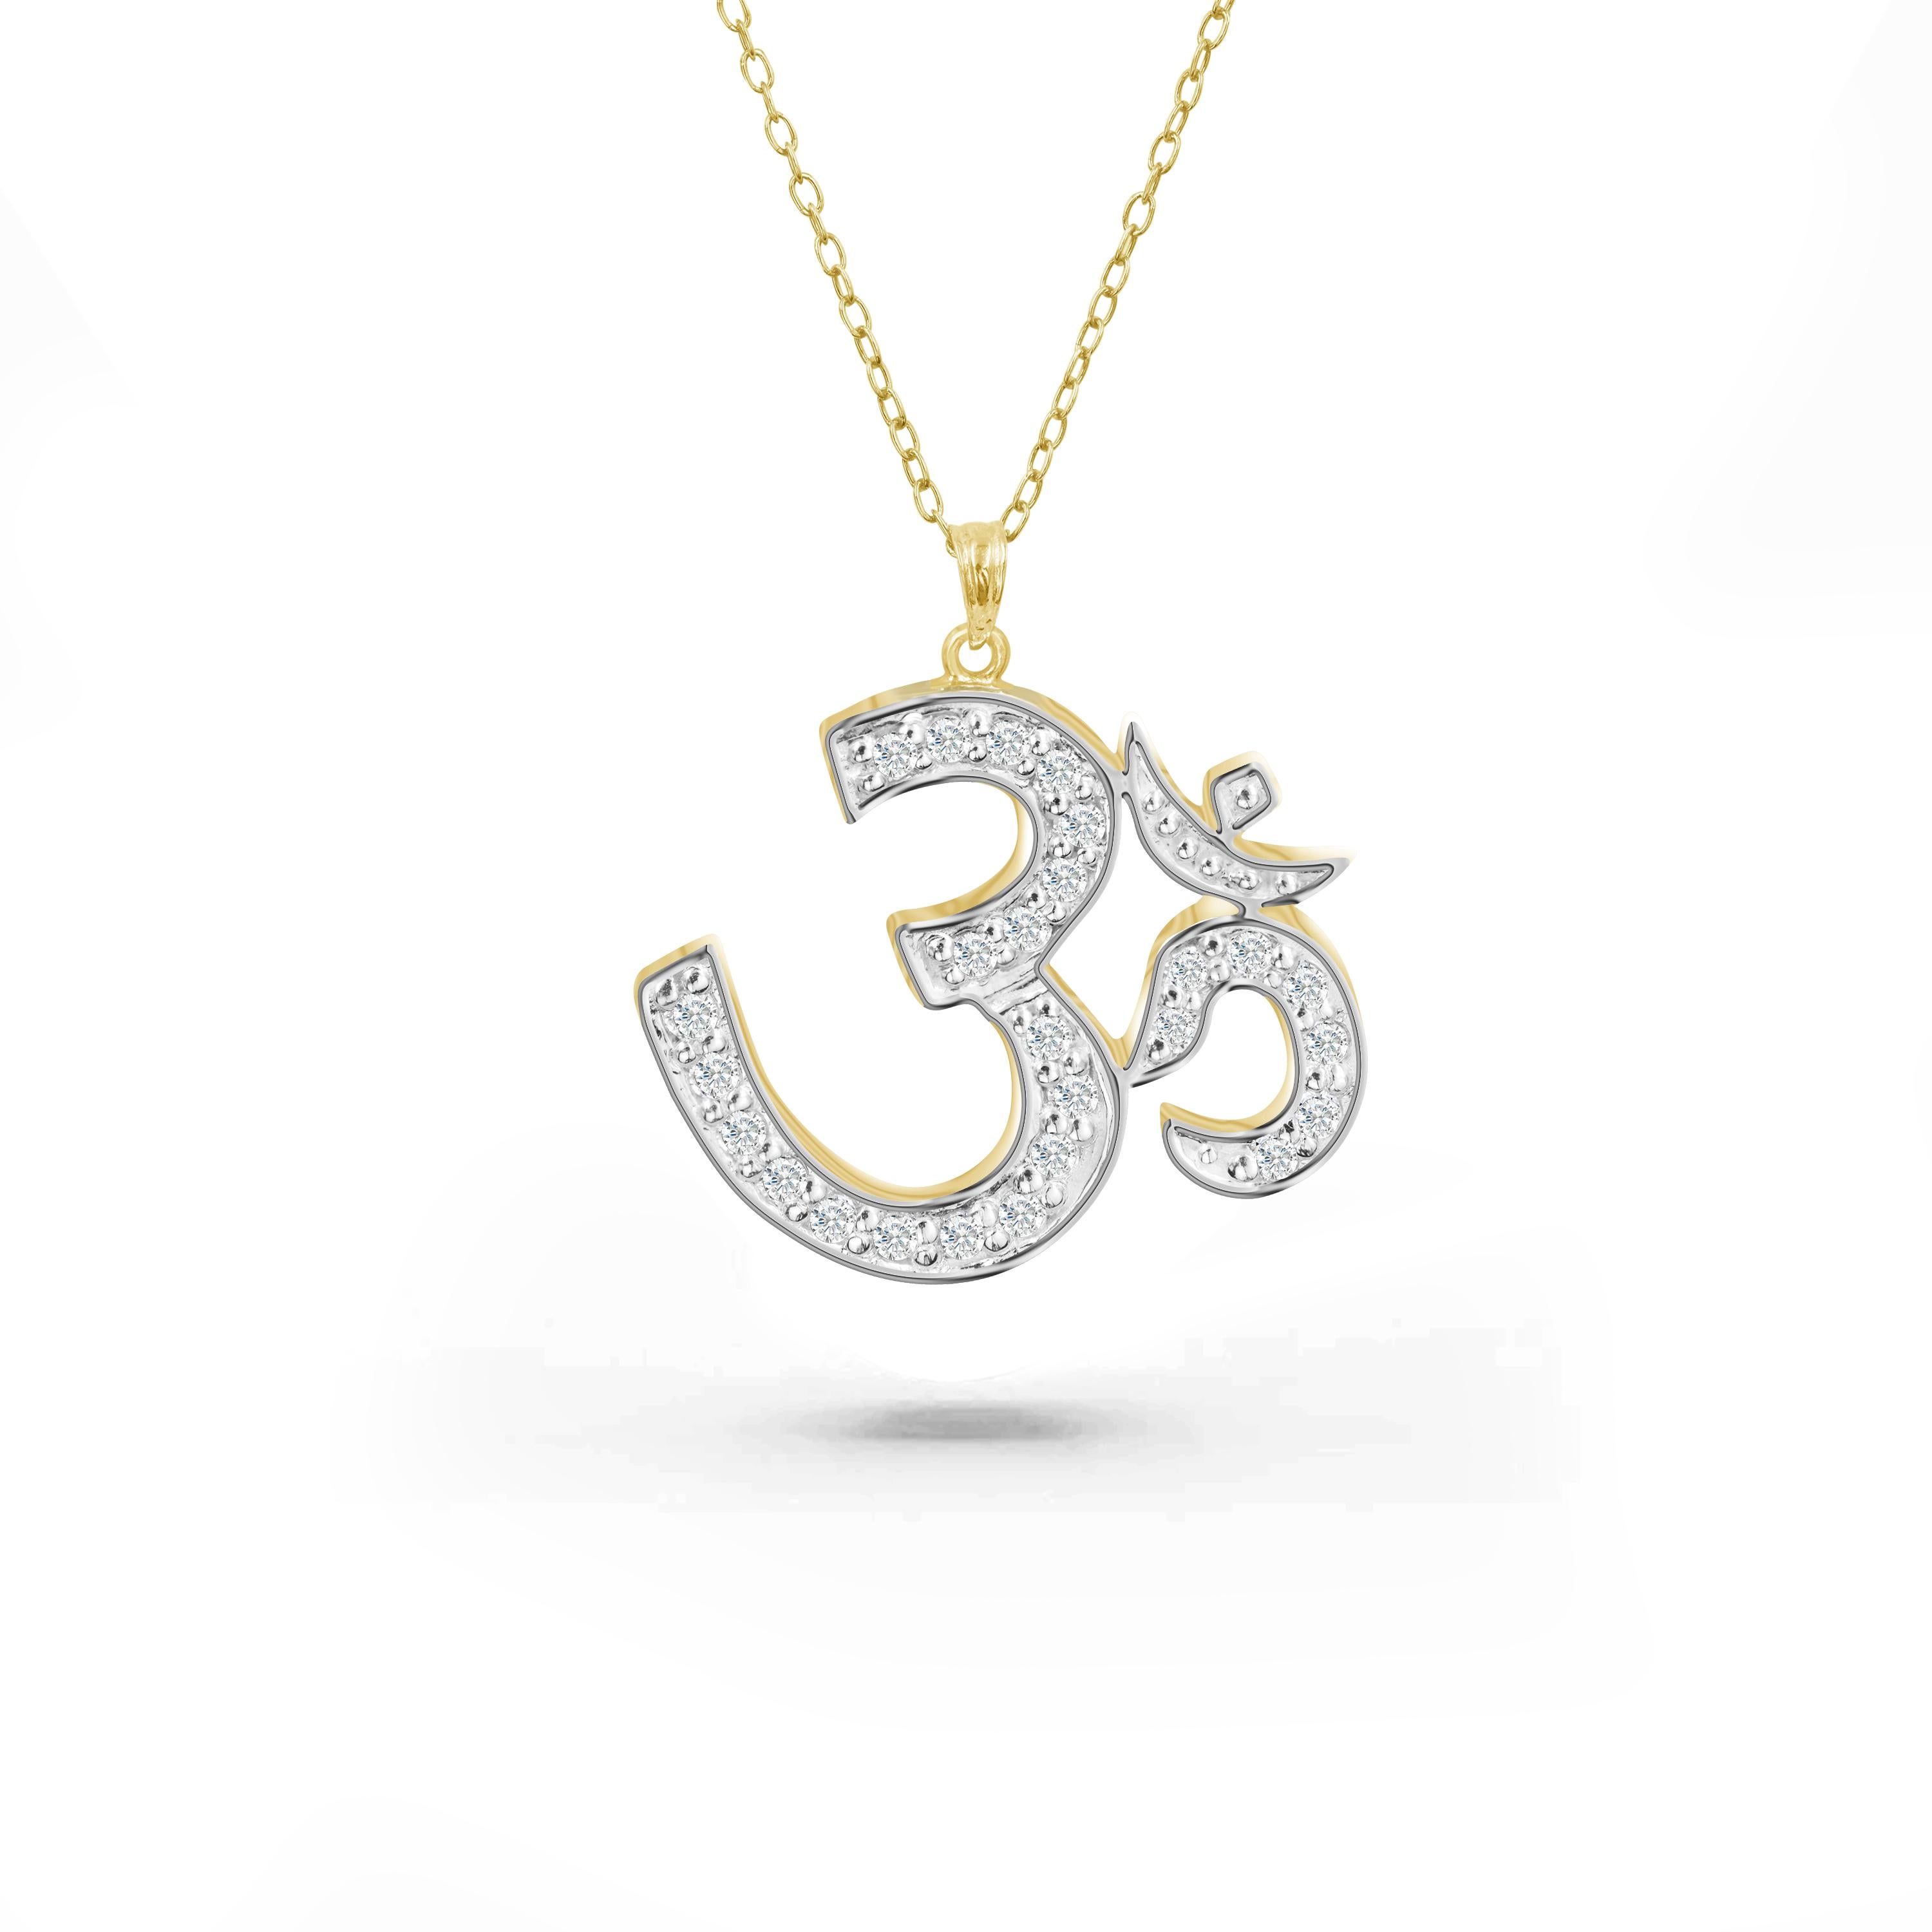 Le collier OM en diamants, fabriqué à la main, est idéal à porter au quotidien pour apporter la paix intérieure et la spiritualité. Ce magnifique collier OM religieux hindou est un collier unique en son genre fabriqué en Thaïlande. Ce collier hindou